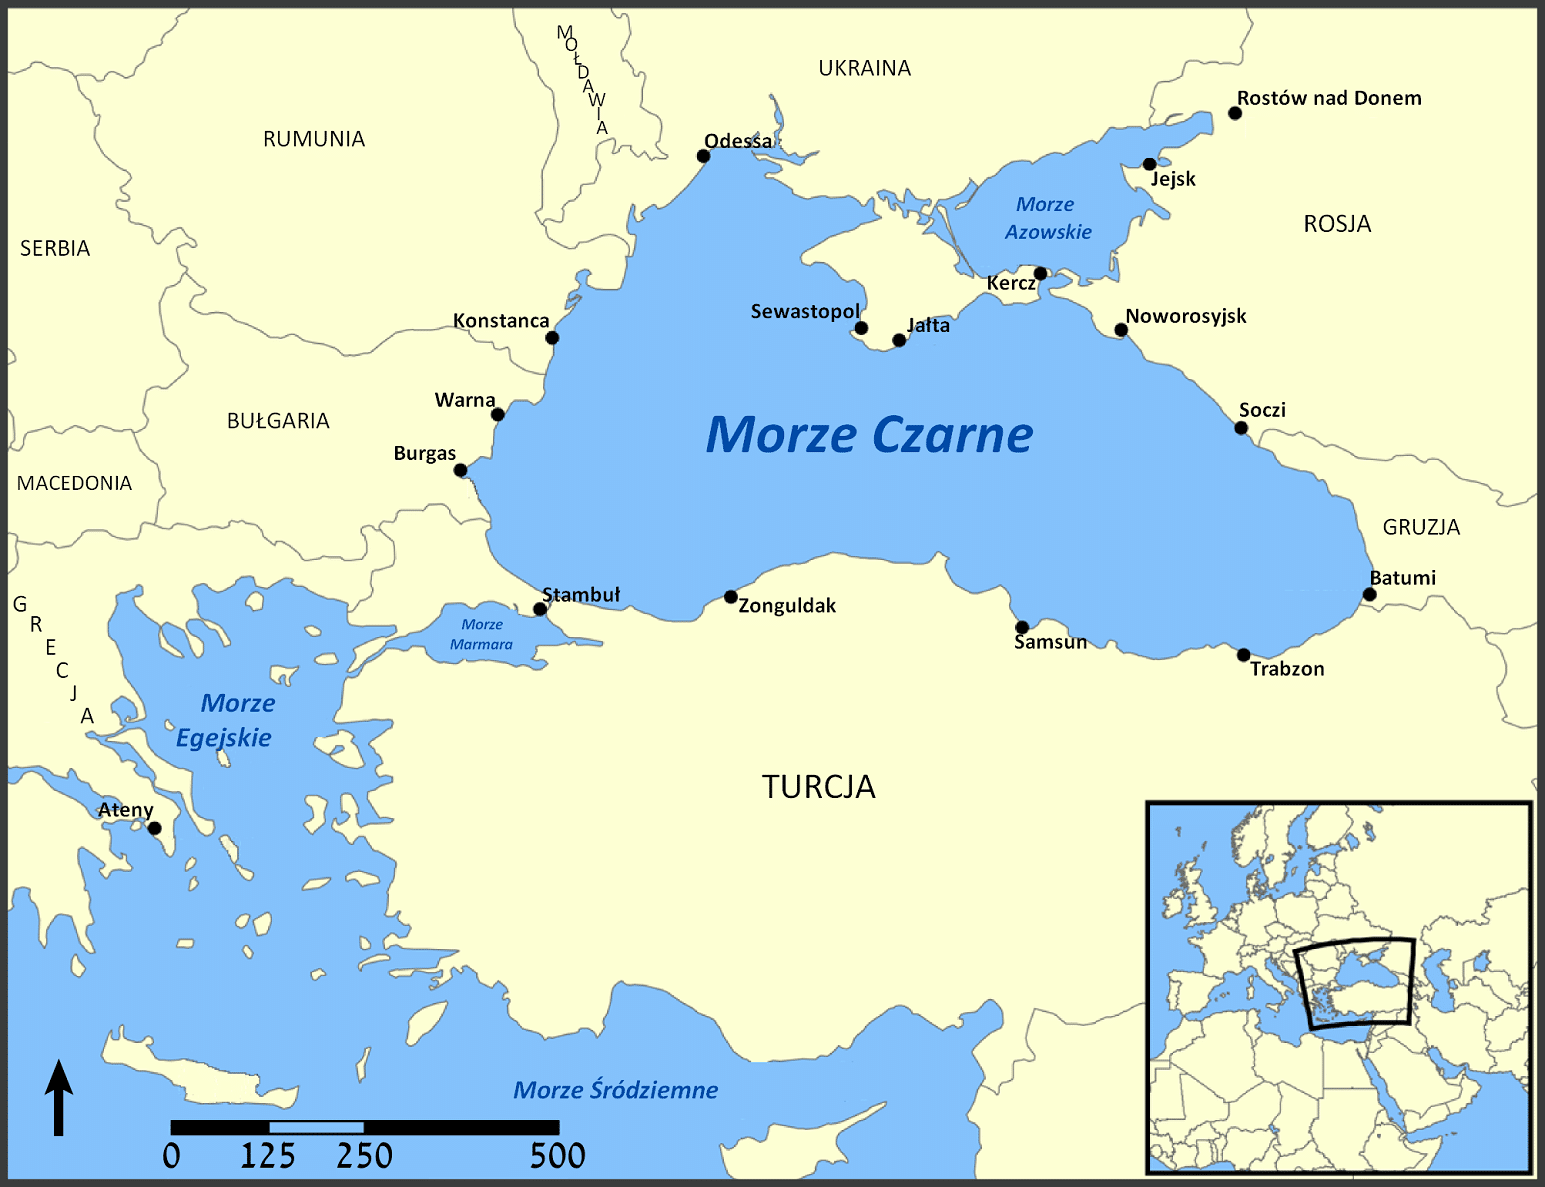 Ukraińcy odkryli duże złoża gazu pod dnem Morza Czarnego.